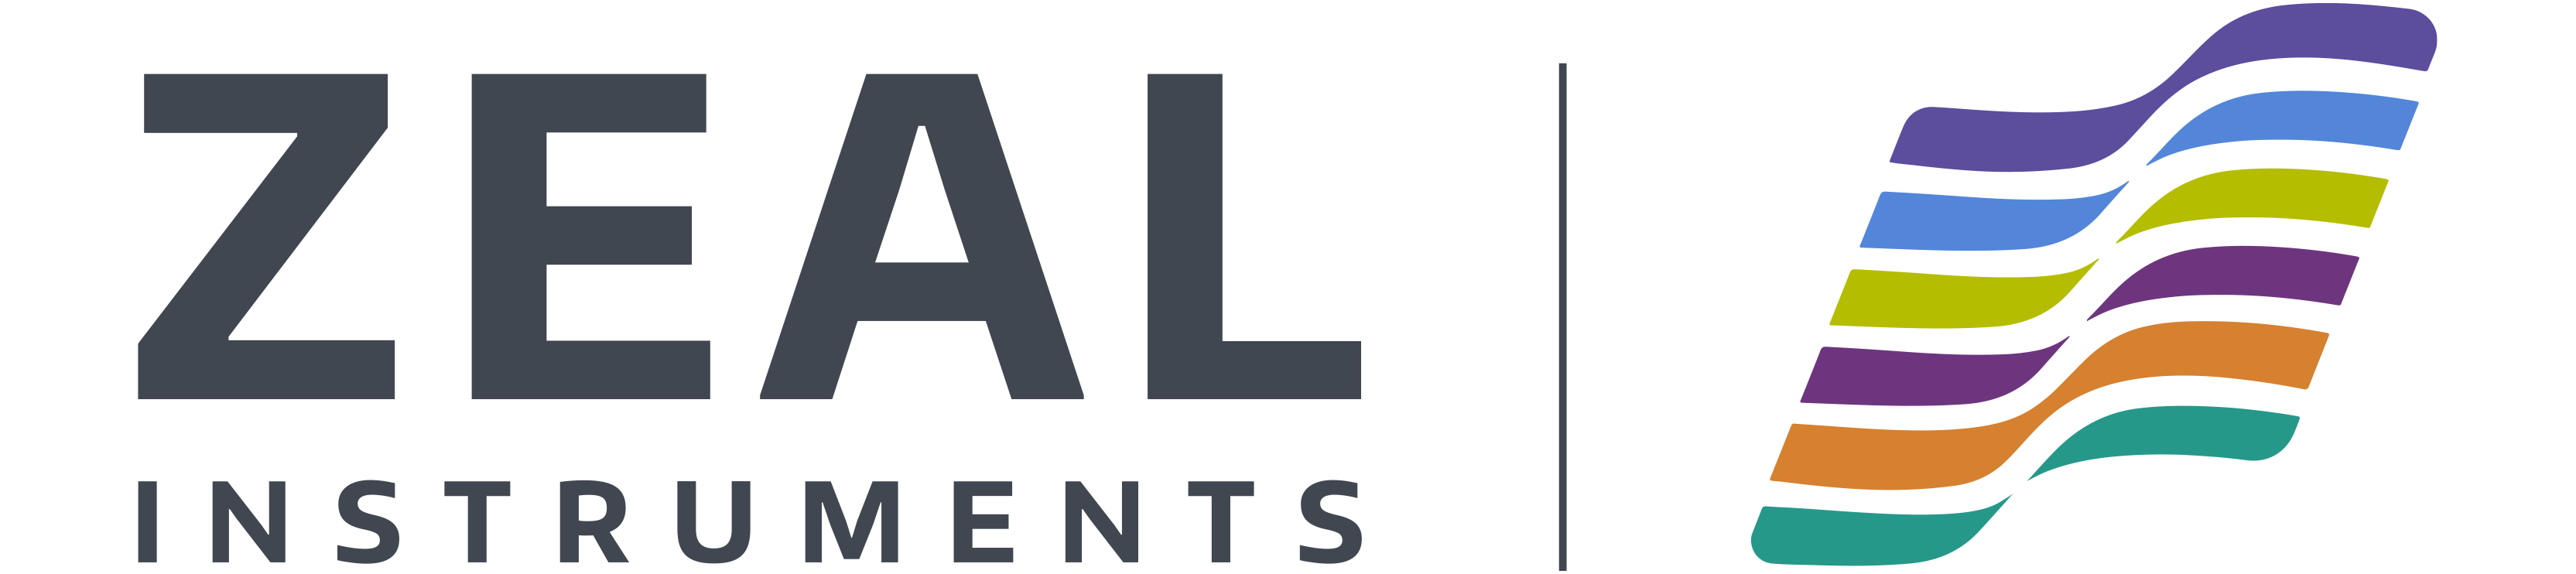 Zeal Instruments logo